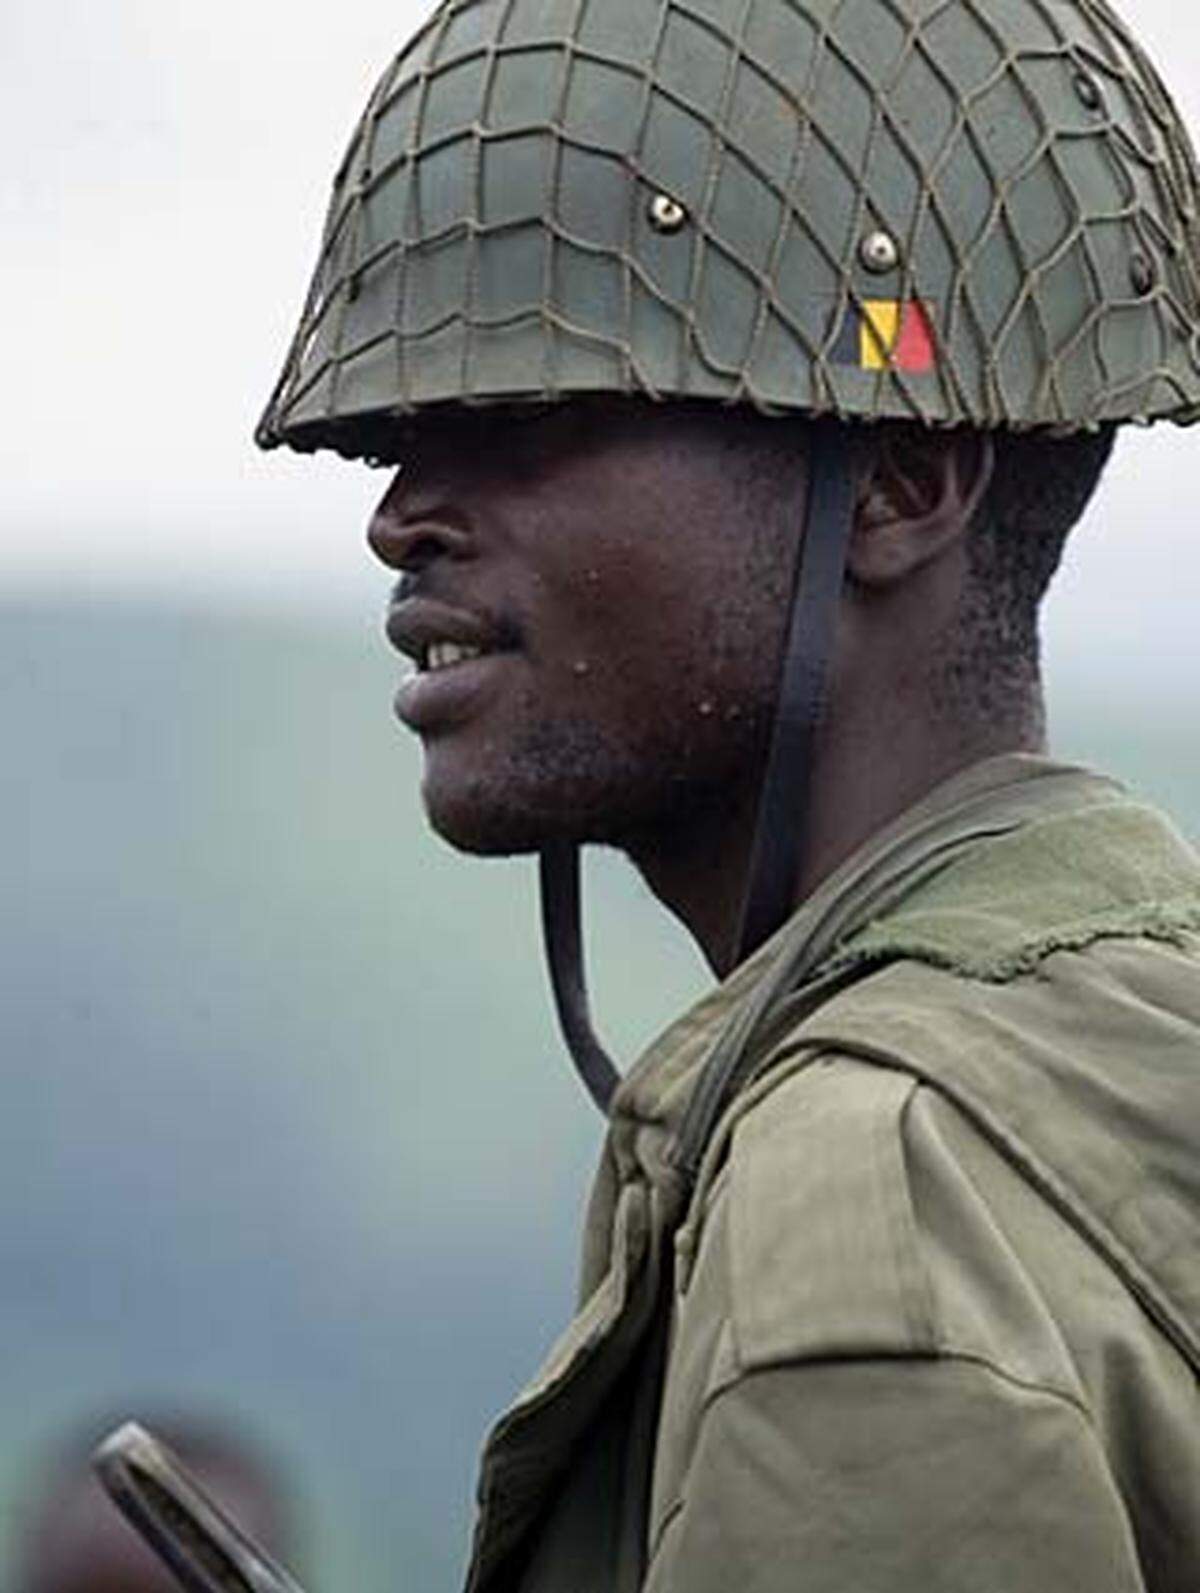 Der Konflikt droht, eine regionale Dimension anzunehmen. Ruanda beschuldigt die kongolesische Armee, mit den Hutu-Rebellen zusammenzuarbeiten. Die Regierung des Kongo beschuldigt ihrerseits Ruanda, den Rebellenführer Nkunda zu unterstützen. Sollte Ruanda sich bedroht fühlen, könnte es einen Einmarsch in die Demokratische Republik Kongo in Erwägung ziehen.